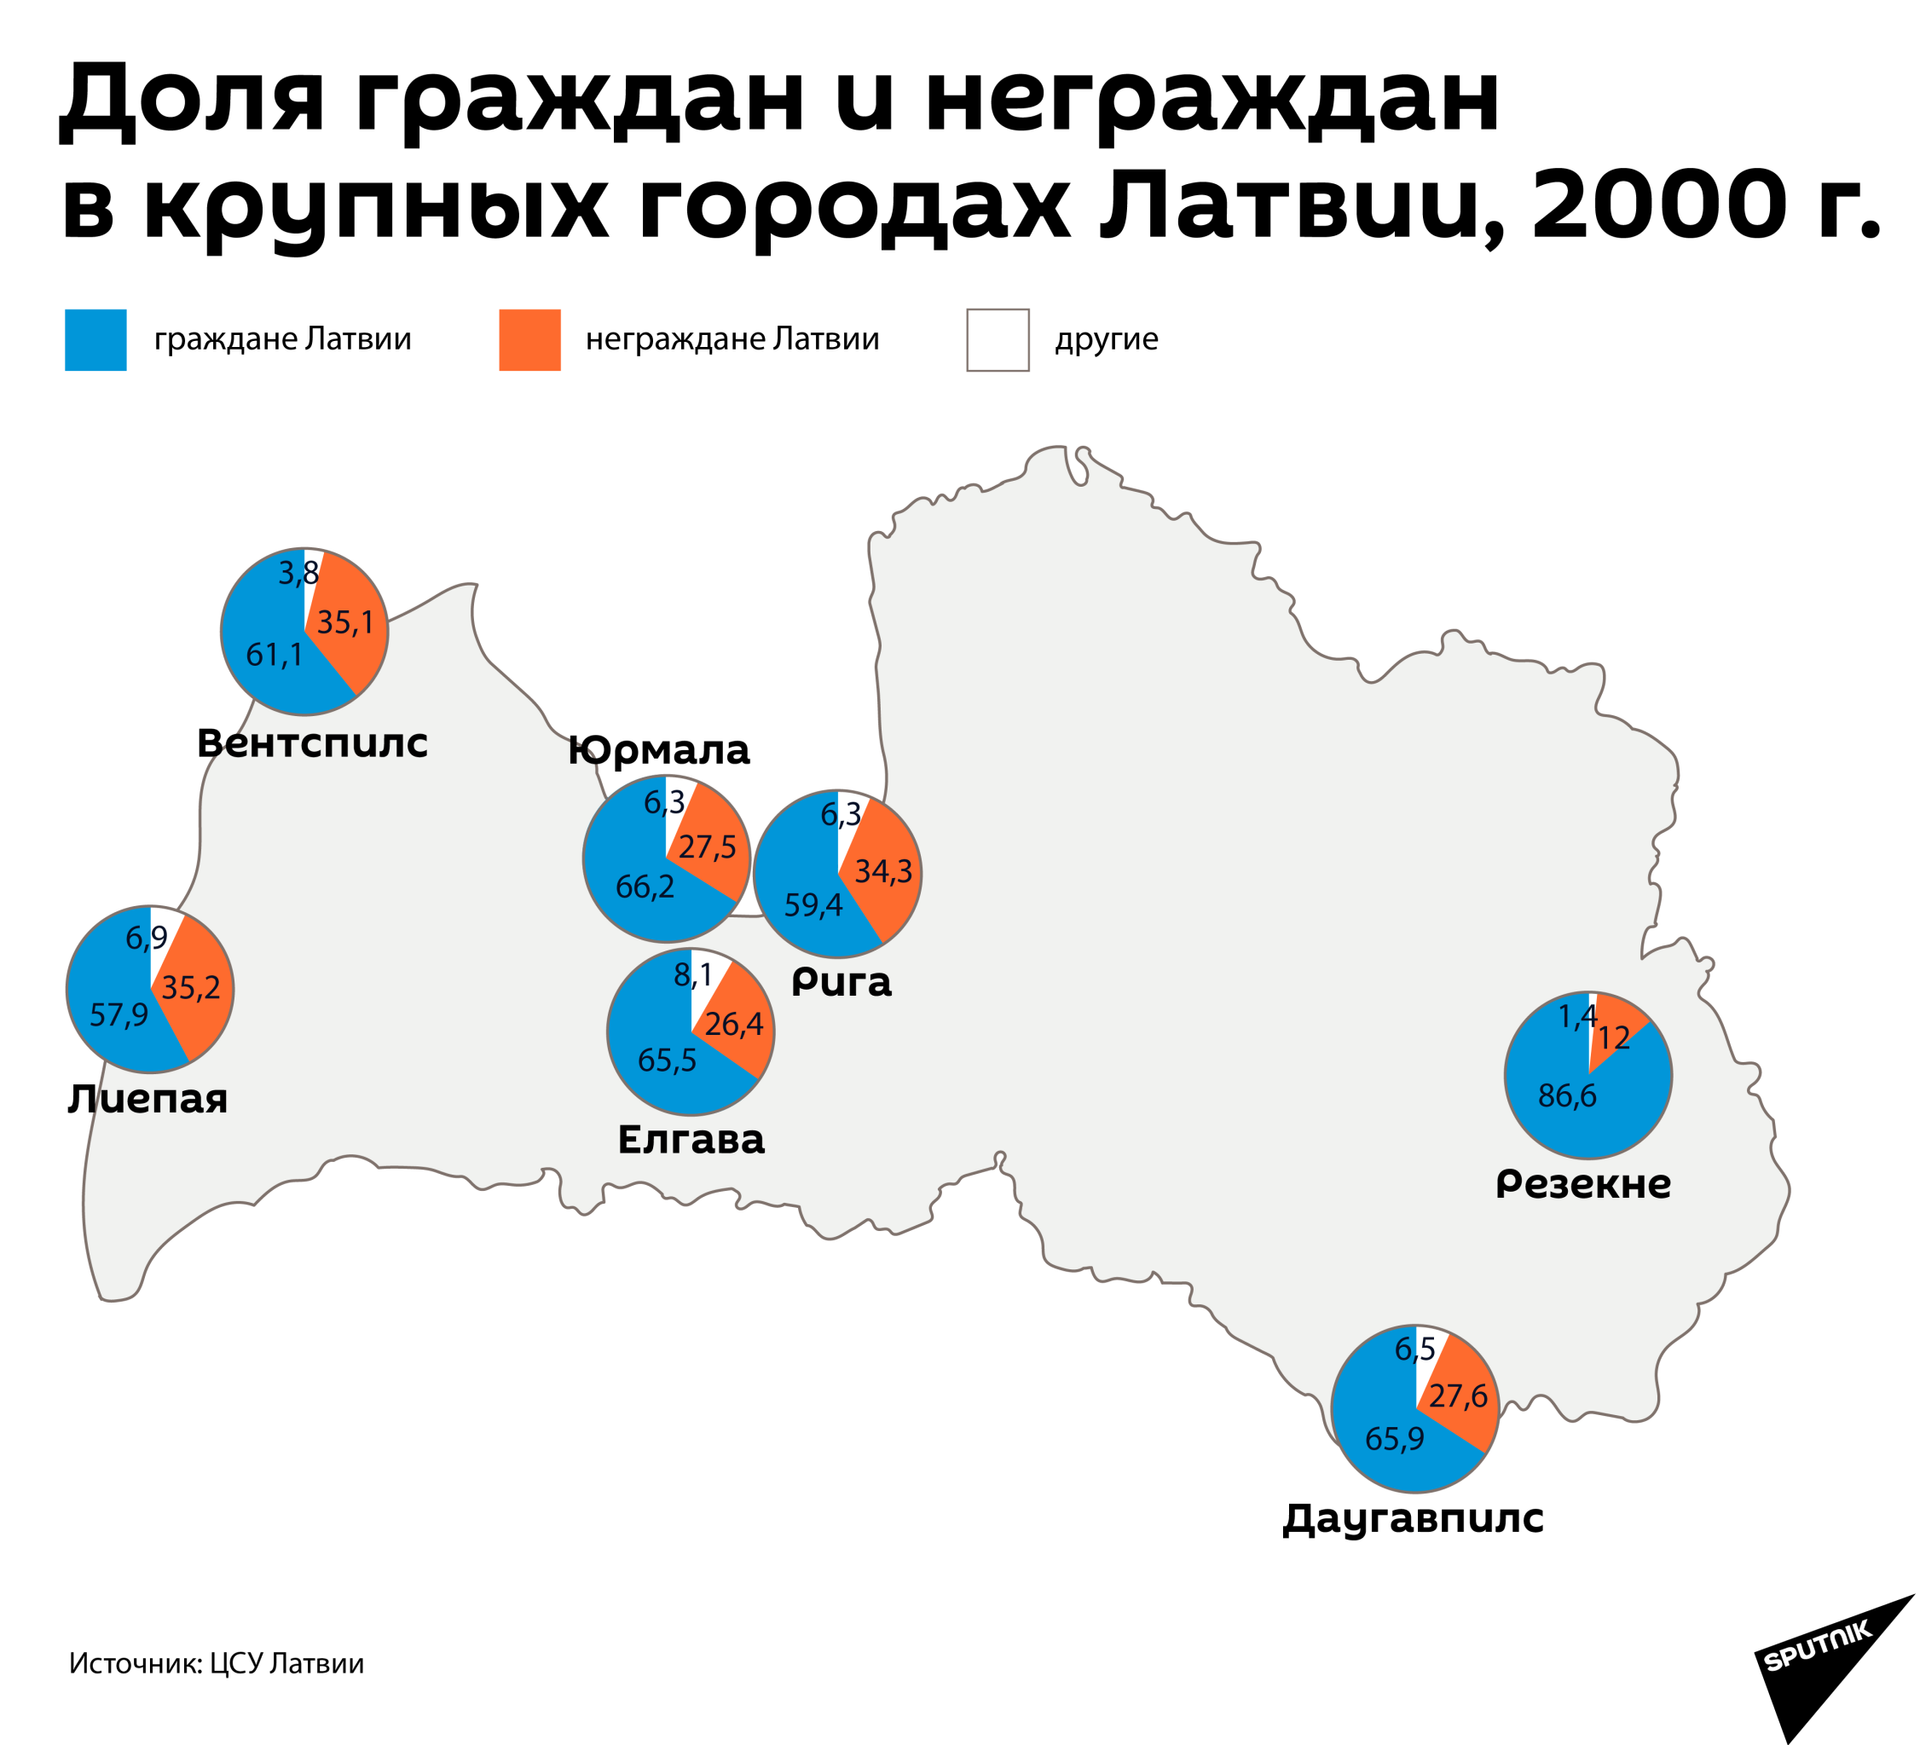 Доля граждан и неграждан в крупных городах Латвии, 2000 г. - Sputnik Латвия, 1920, 01.06.2021